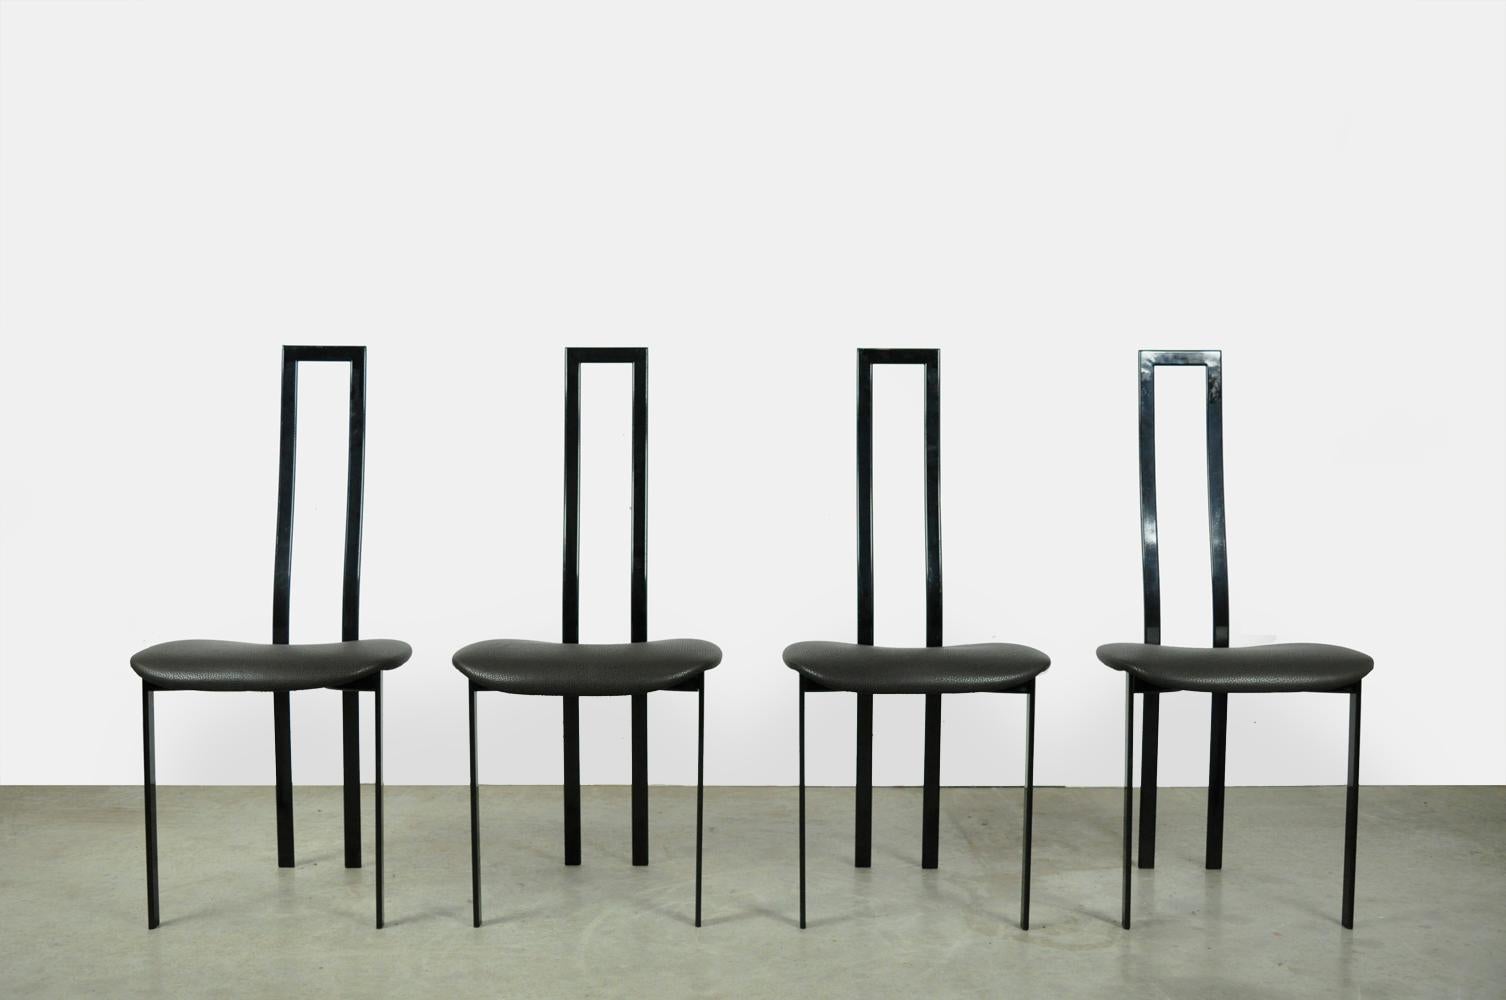 Ensemble de 4 chaises de table de salle à manger postmoderne conçu par l'artiste italien Maurizio Cattelan, années 1980. Les chaises élégantes sont dotées d'une fine structure en métal noir et d'une assise en tissu à pois mixtes noir-gris. Les